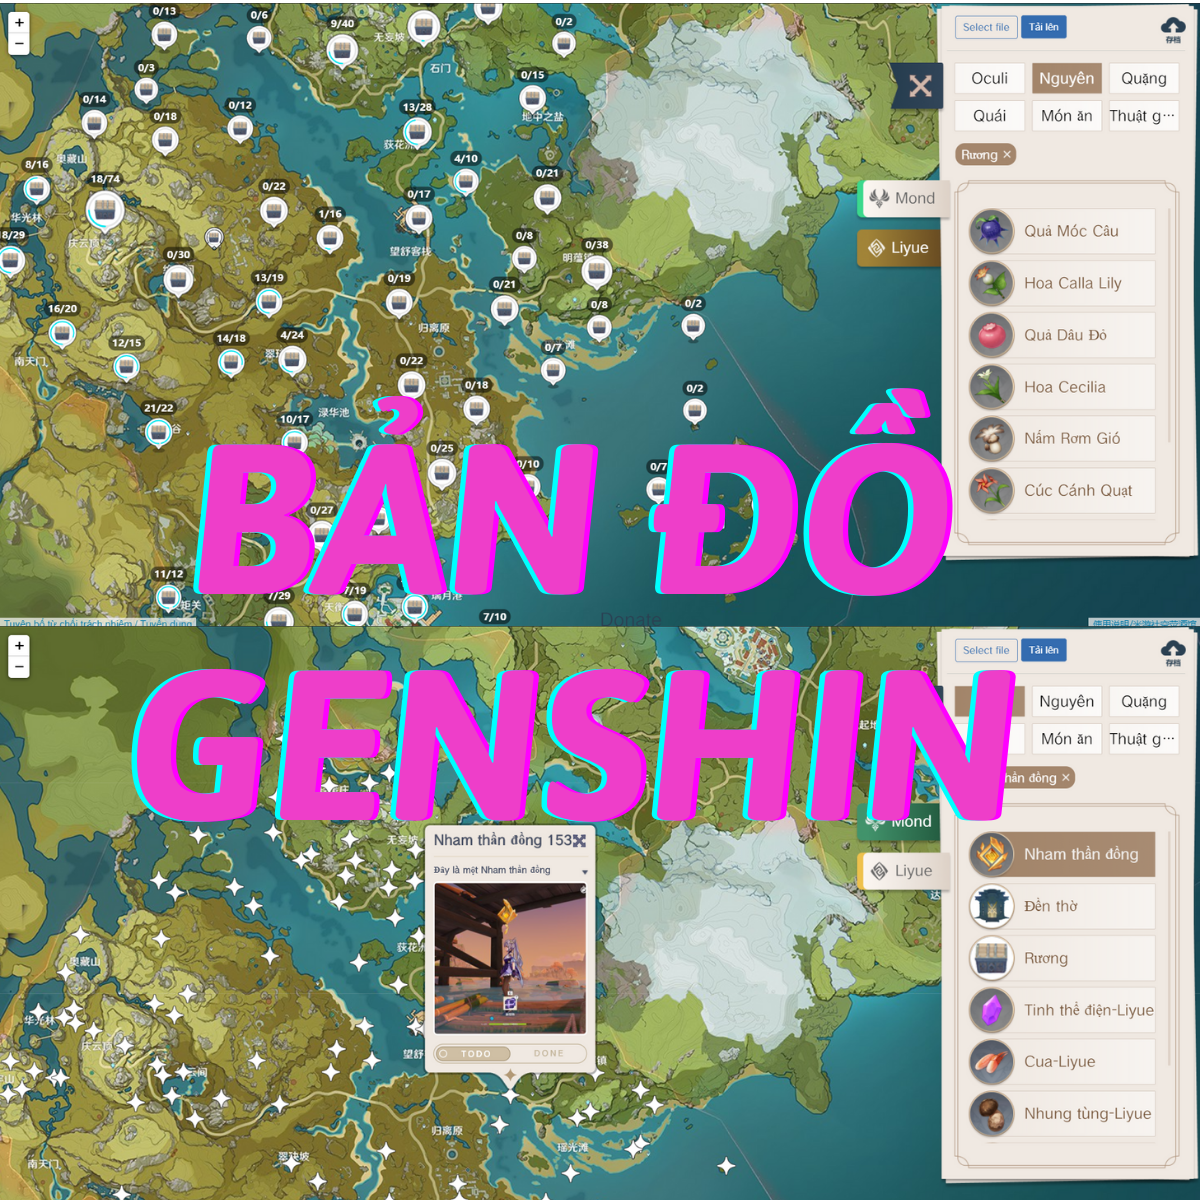 Bản đồ Genshin Impact Tiếng Việt mới nhất năm 2024 được cập nhật đầy đủ và chính xác, giúp cho người chơi dễ dàng xác định vị trí và hướng đi. Với bản đồ mới này, các trải nghiệm chơi game sẽ đầy đặn hơn bao giờ hết.